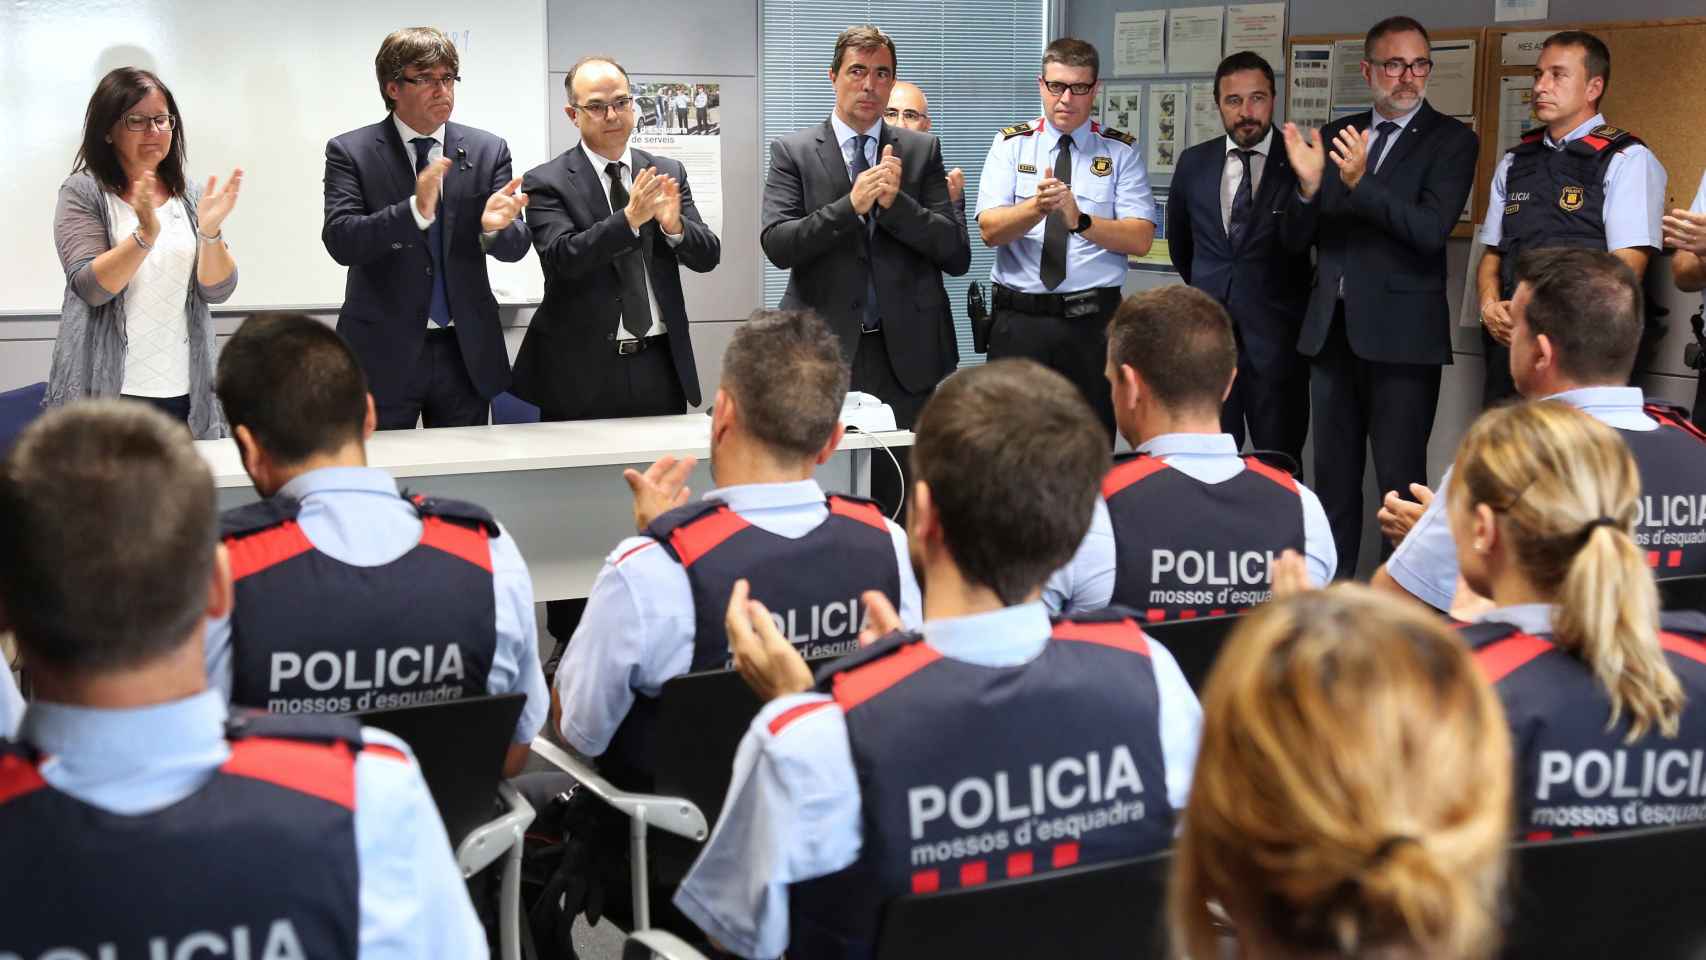 El president de la Generalitat, Carles Puigdemont, aplaude el trabajo realizado por los Mossos d'Esquadra / EFE